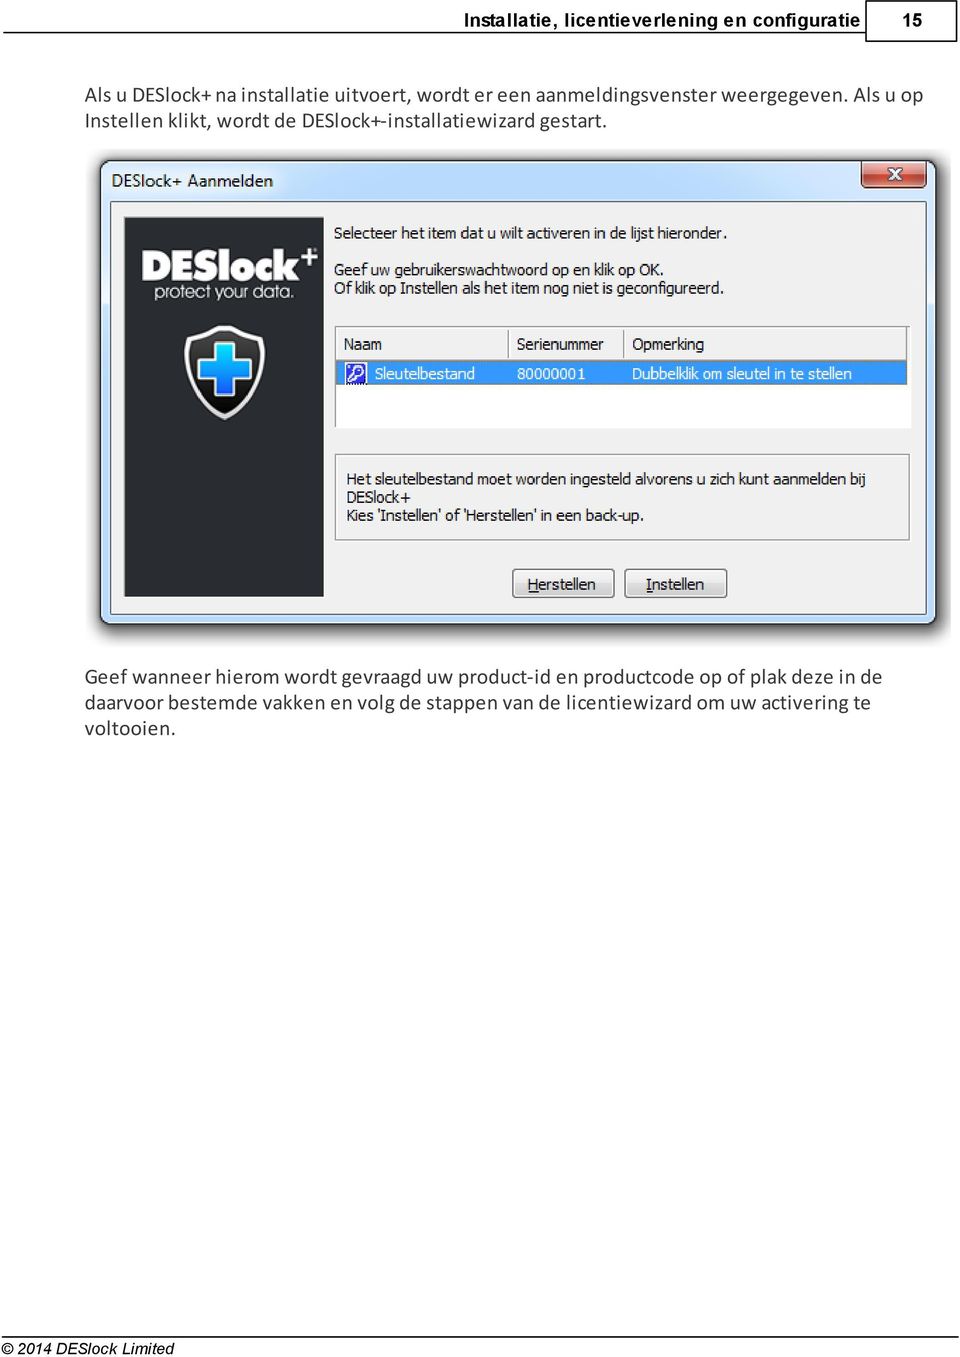 Als u op Instellen klikt, wordt de DESlock+-installatiewizard gestart.